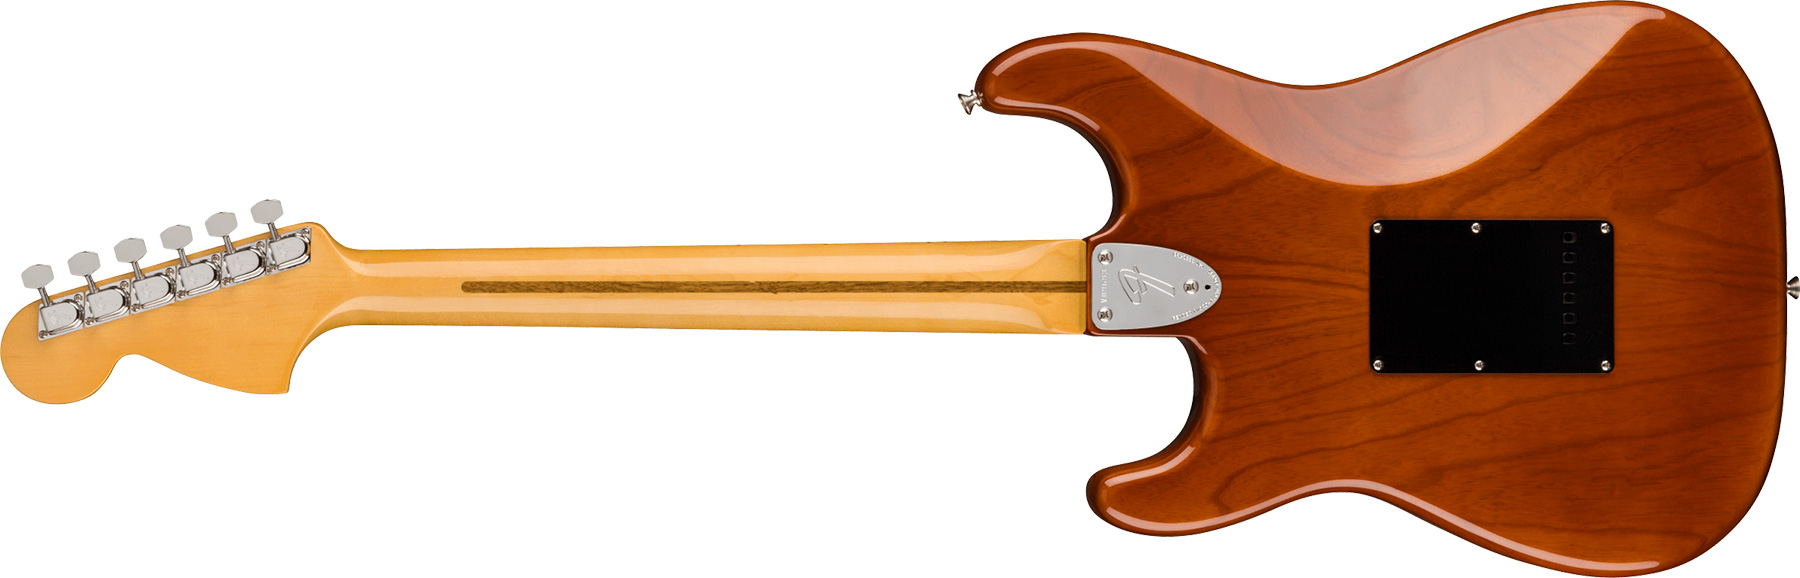 Fender Strat 1973 American Vintage Ii Usa 3s Trem Mn - Mocha - E-Gitarre in Str-Form - Variation 1